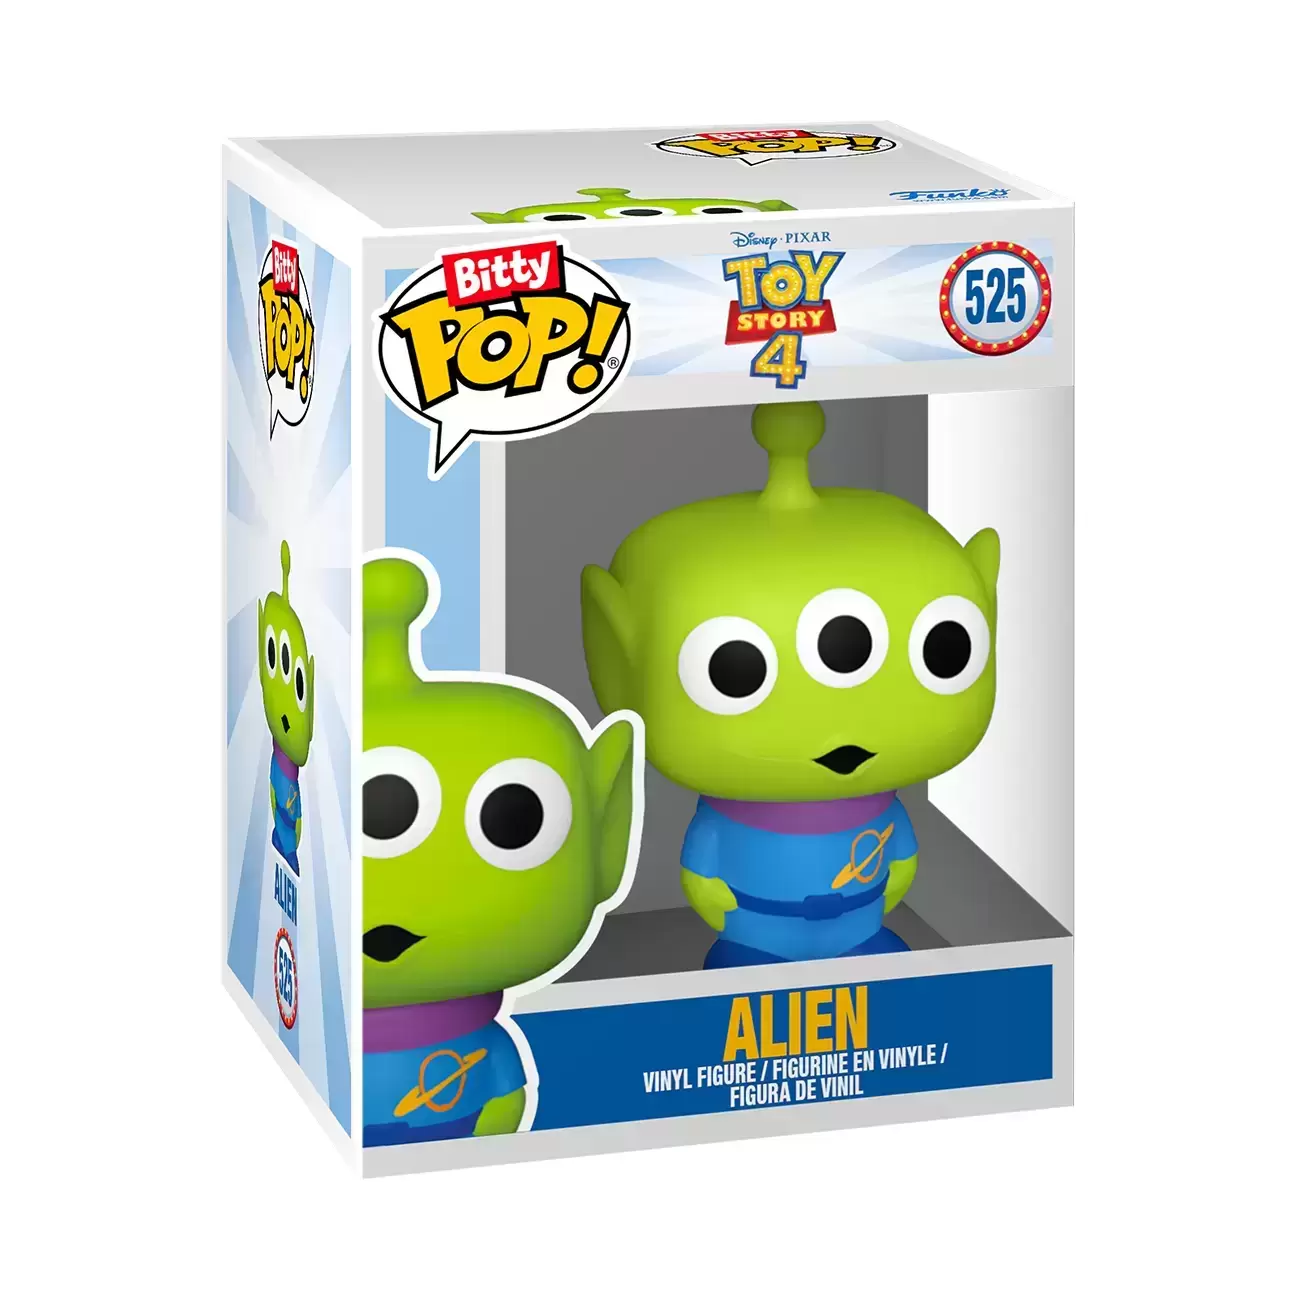 Bitty POP! - Toy Story - Alien